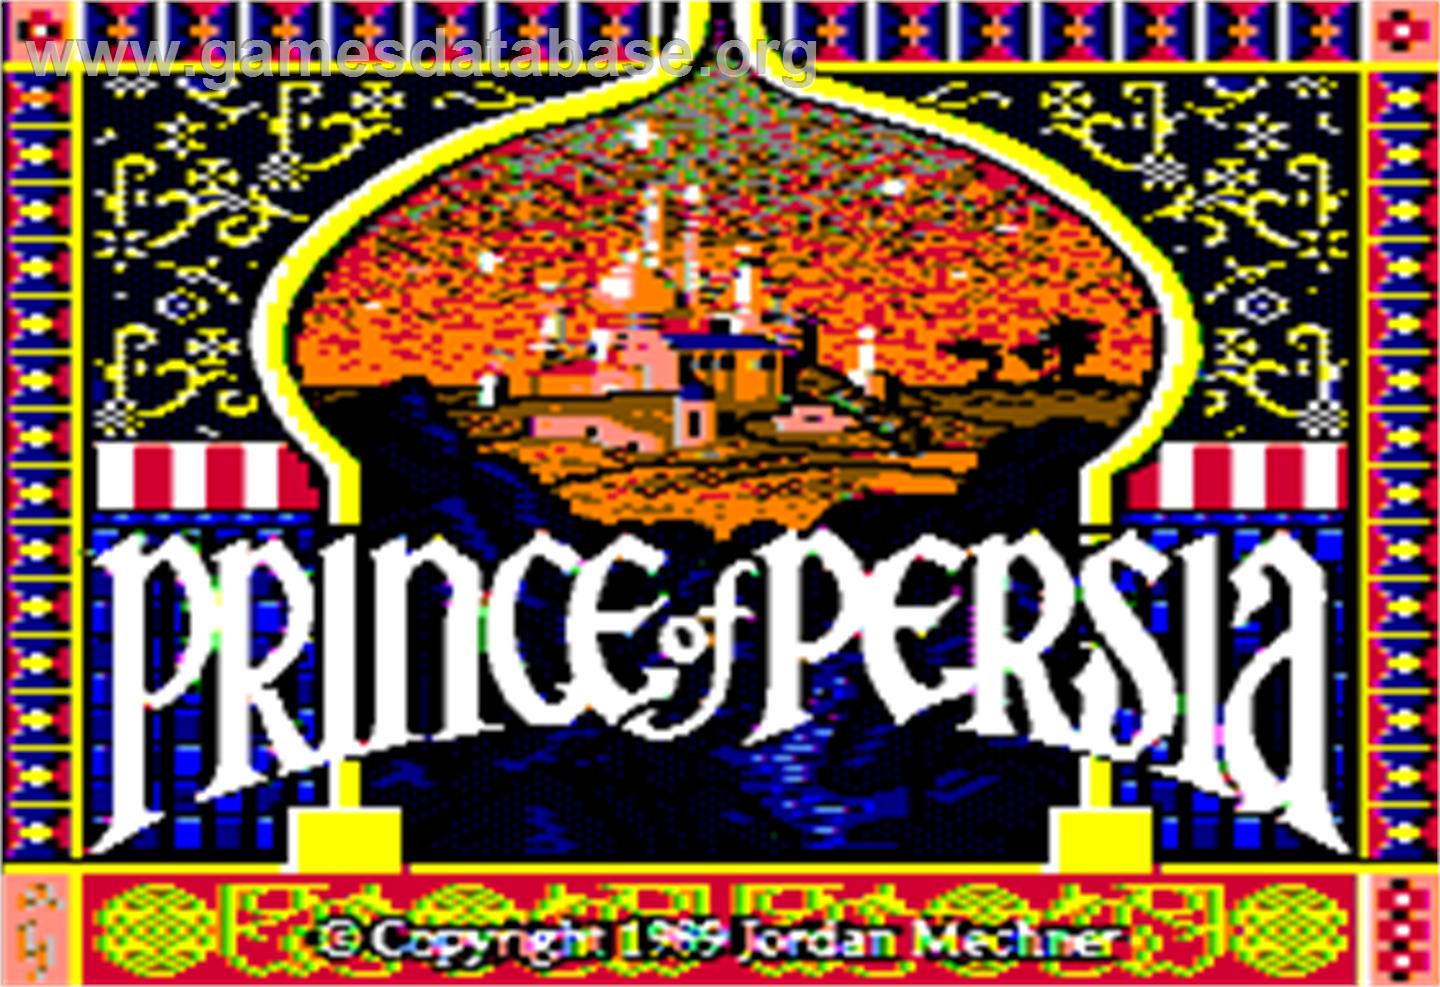 Prince of Persia - Apple II - Artwork - Title Screen